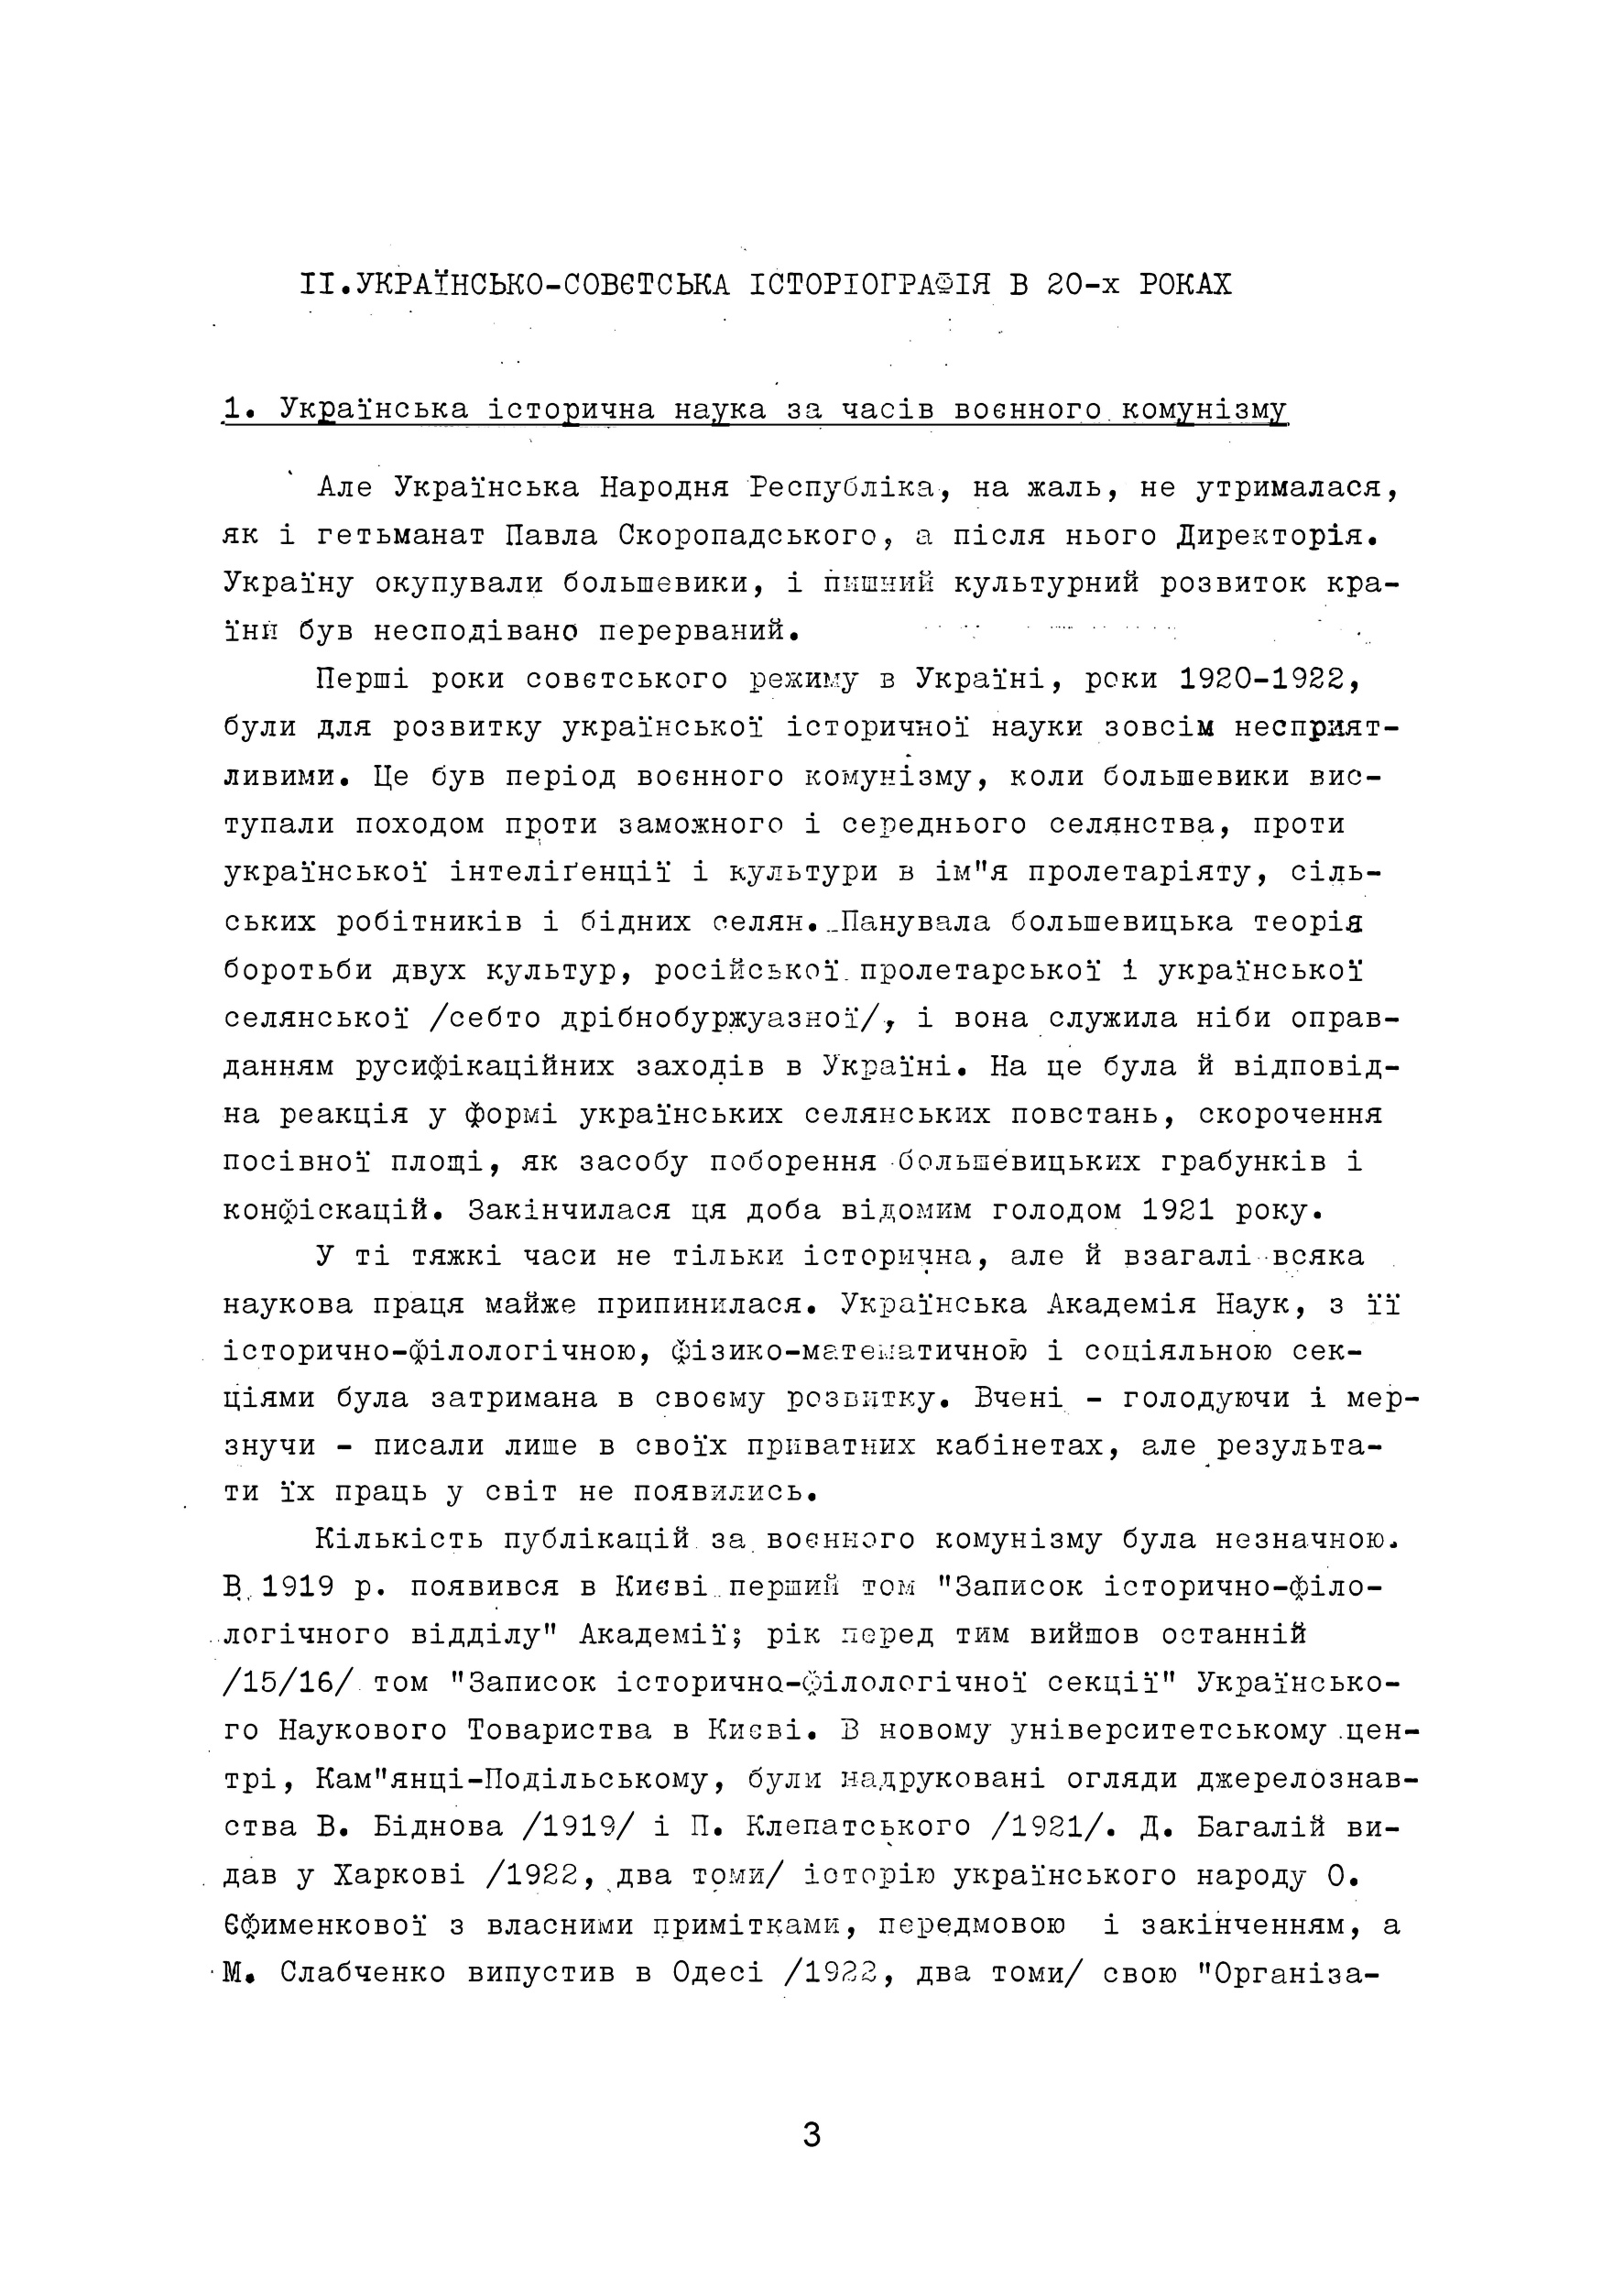 Українська історична наука під совєтами (1920-1950 роки). Автор — Б.Д. Крупницький. 